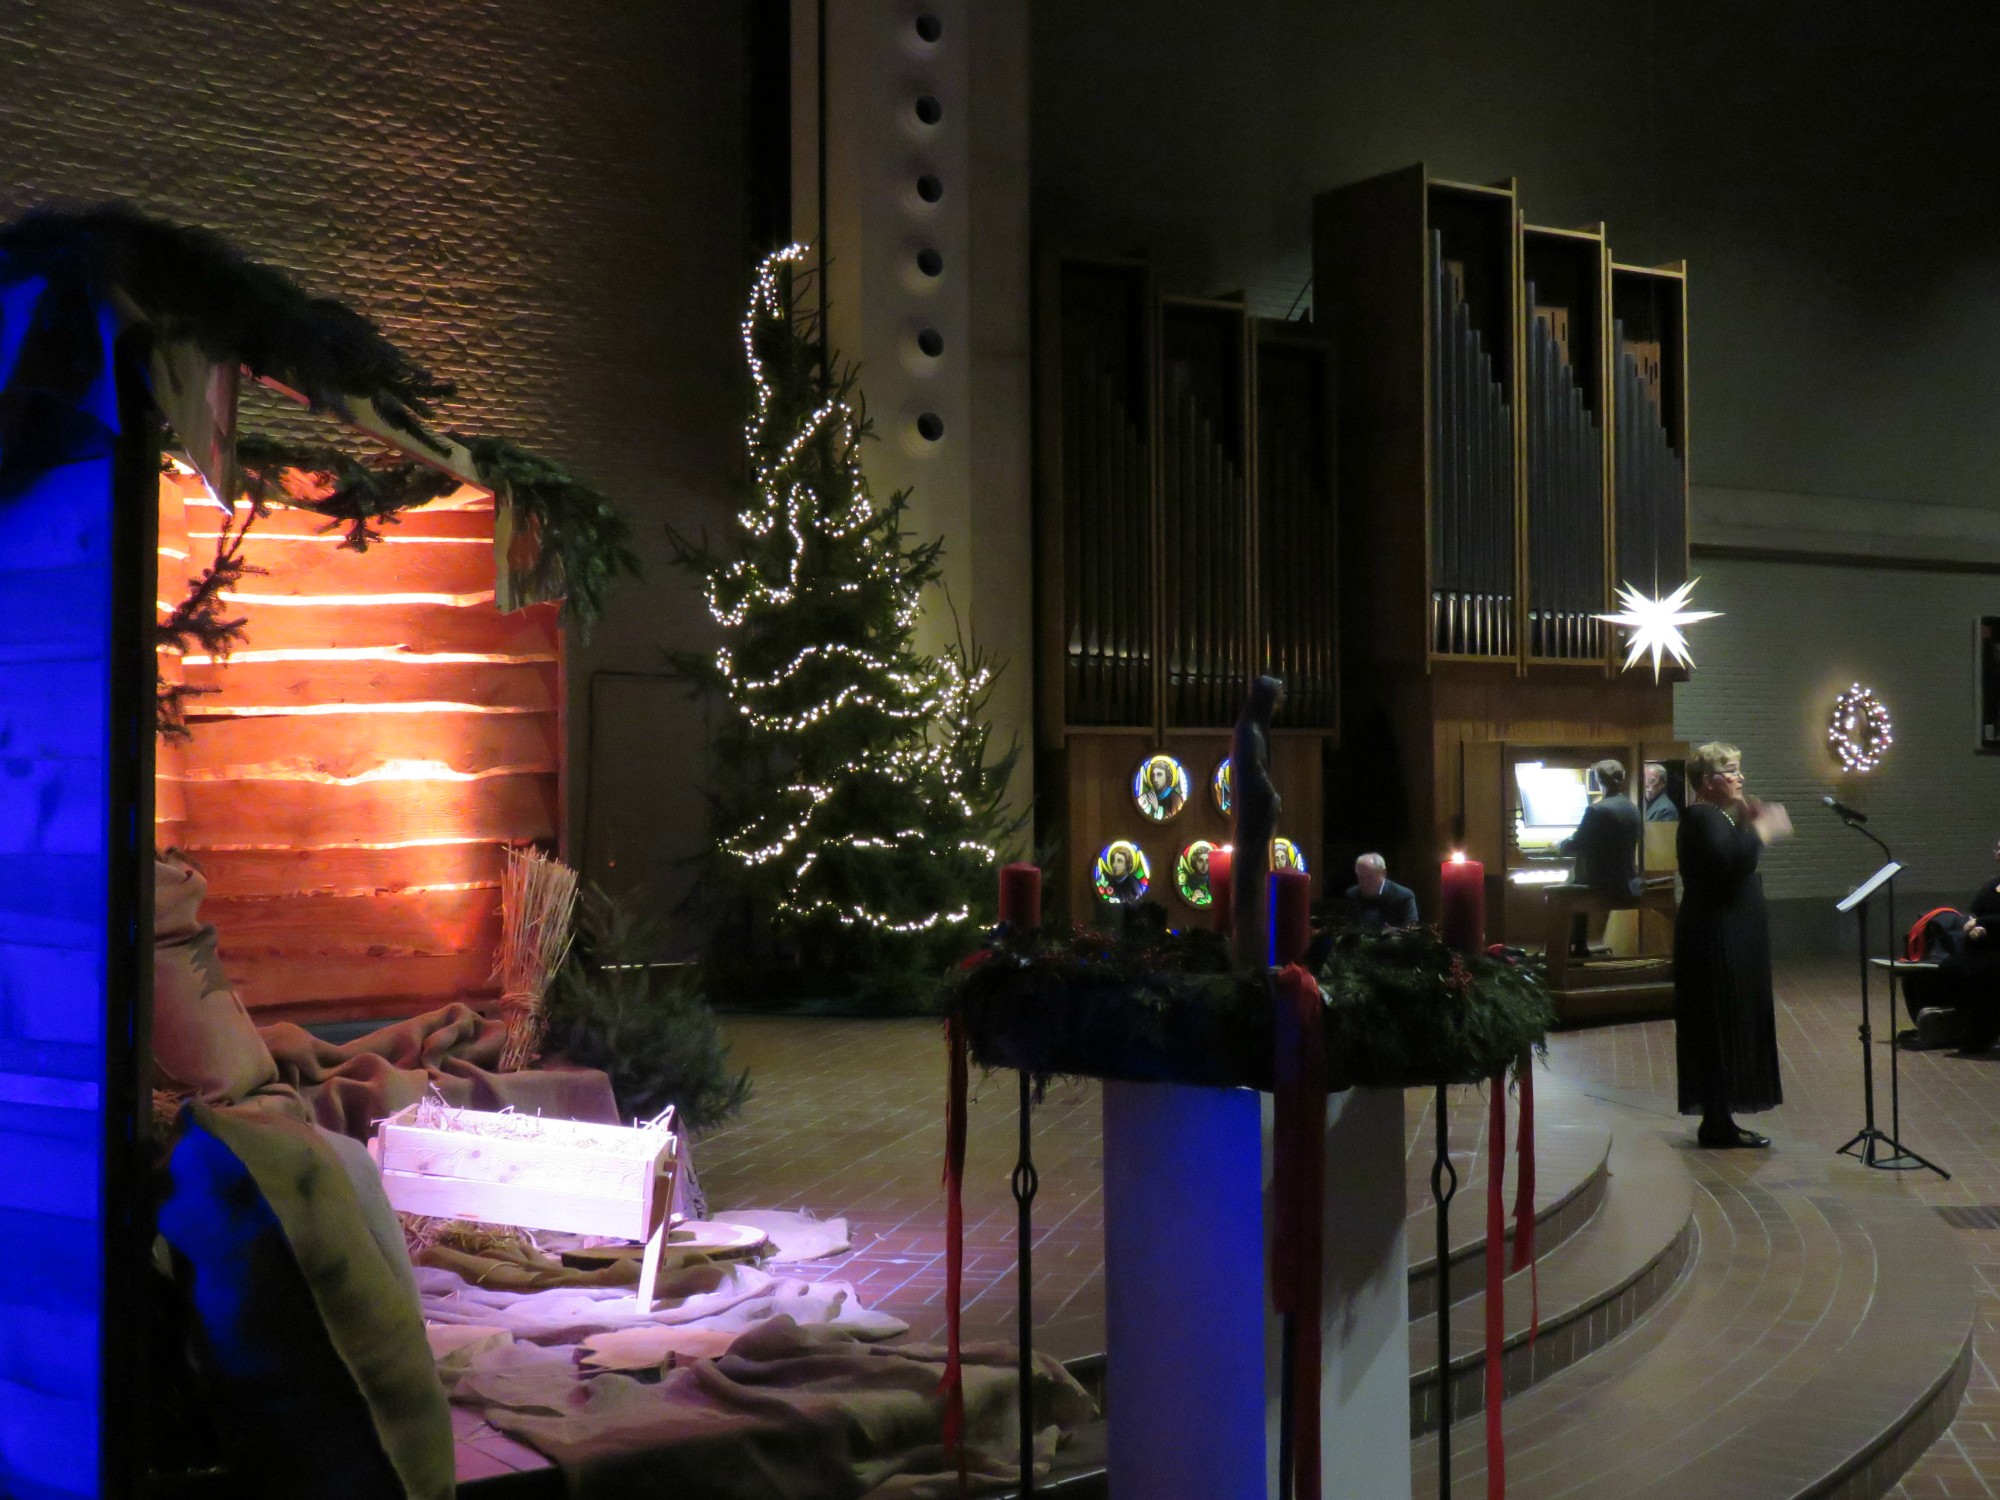 Meezing kerstconcert - Ortolaan - Klankjorum - Sint-Annakoor - Joannes Thuy - Myriam Baert - Sint-Anna-ten-Drieënkerk, Antwerpen Linkeroever